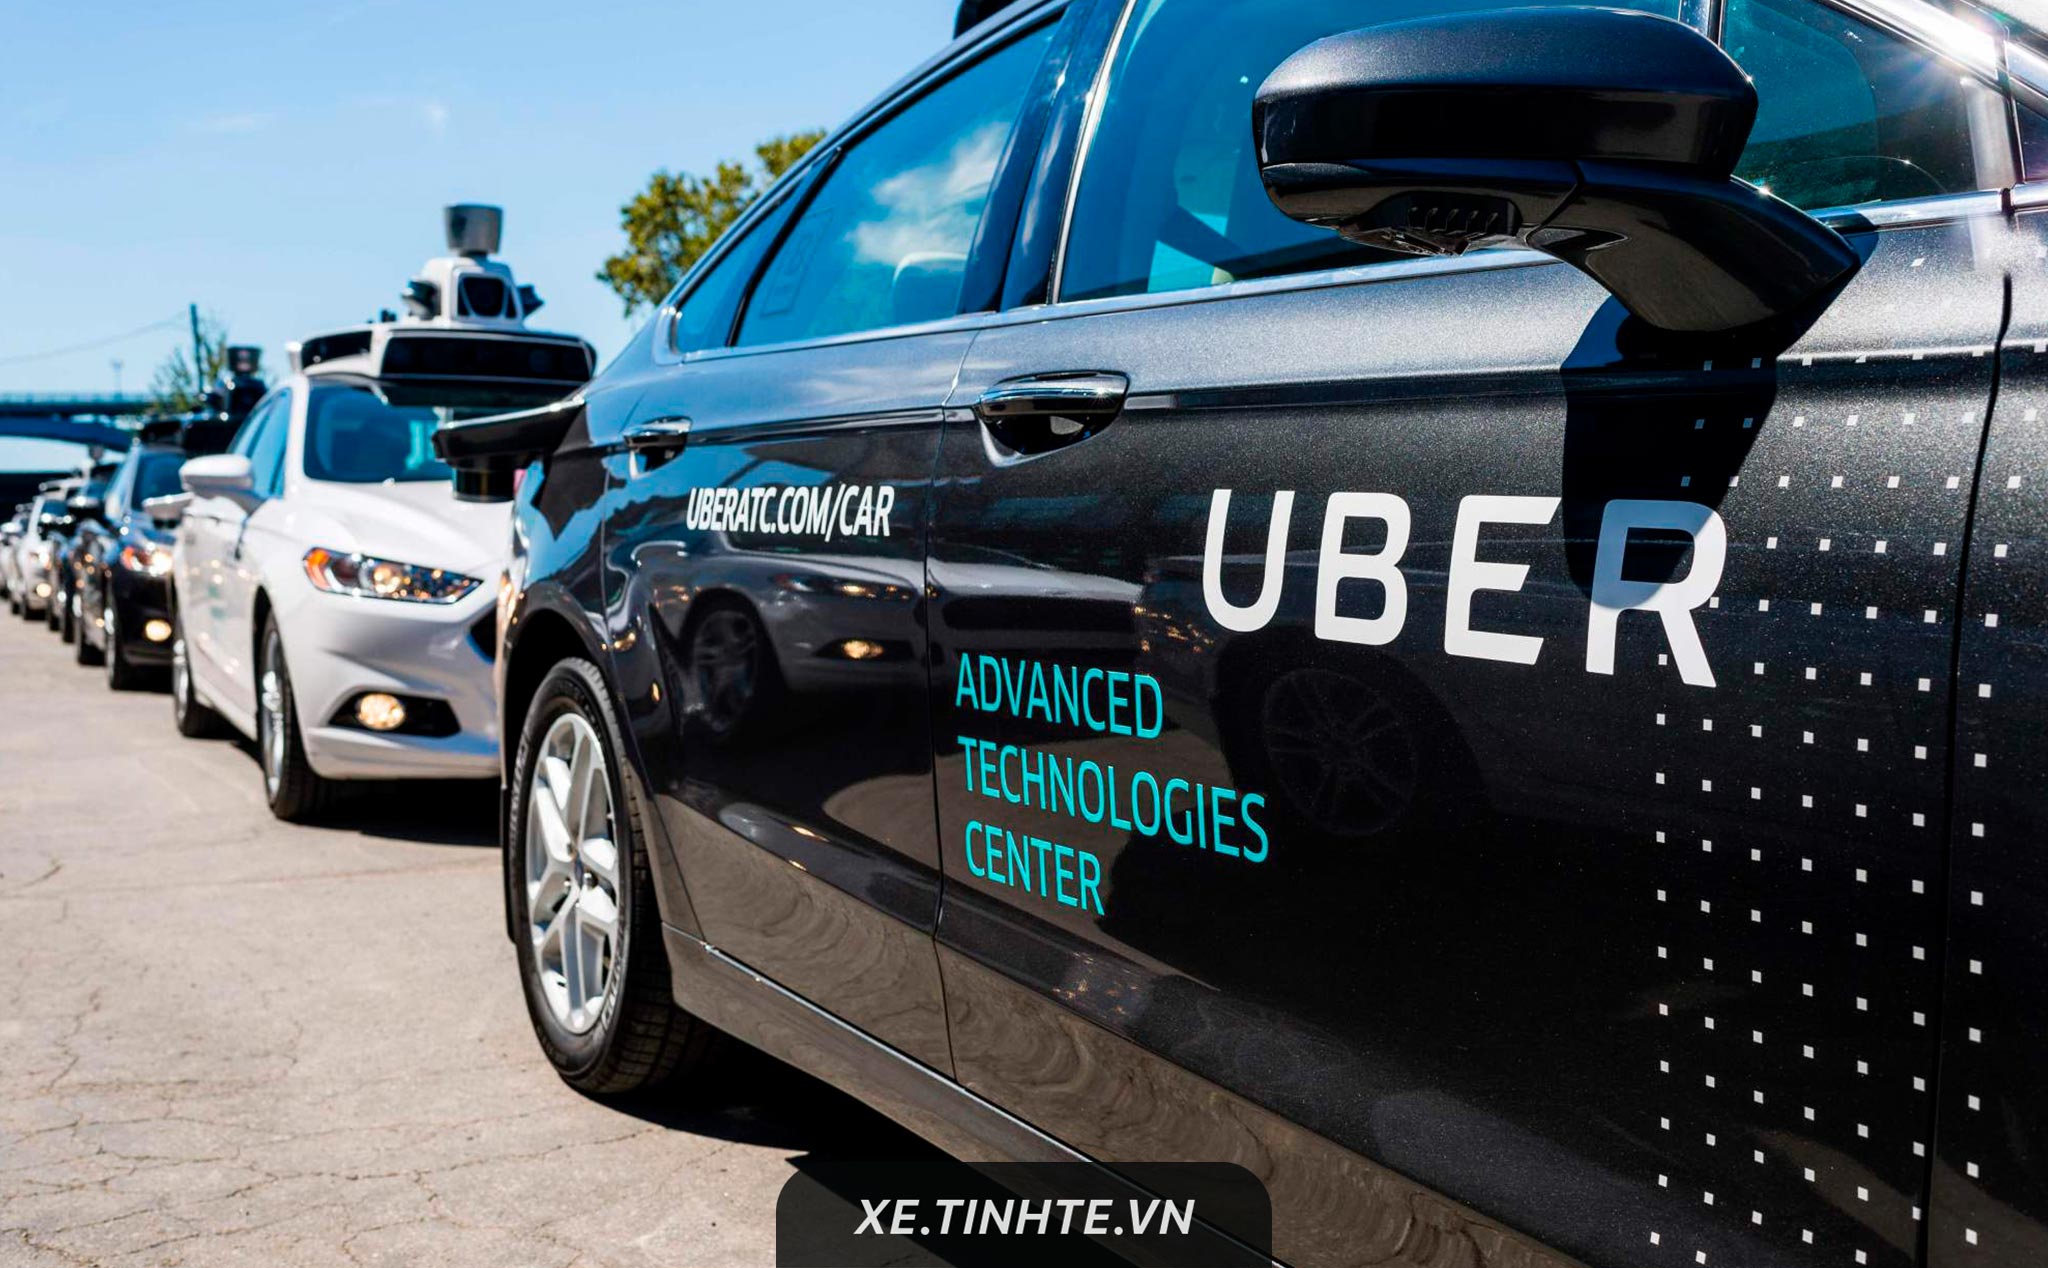 Công ty nghiên cứu xe tự hành của Uber ra riêng, nhận đầu tư 1 tỷ USD từ Toyota, Denso và Softbank